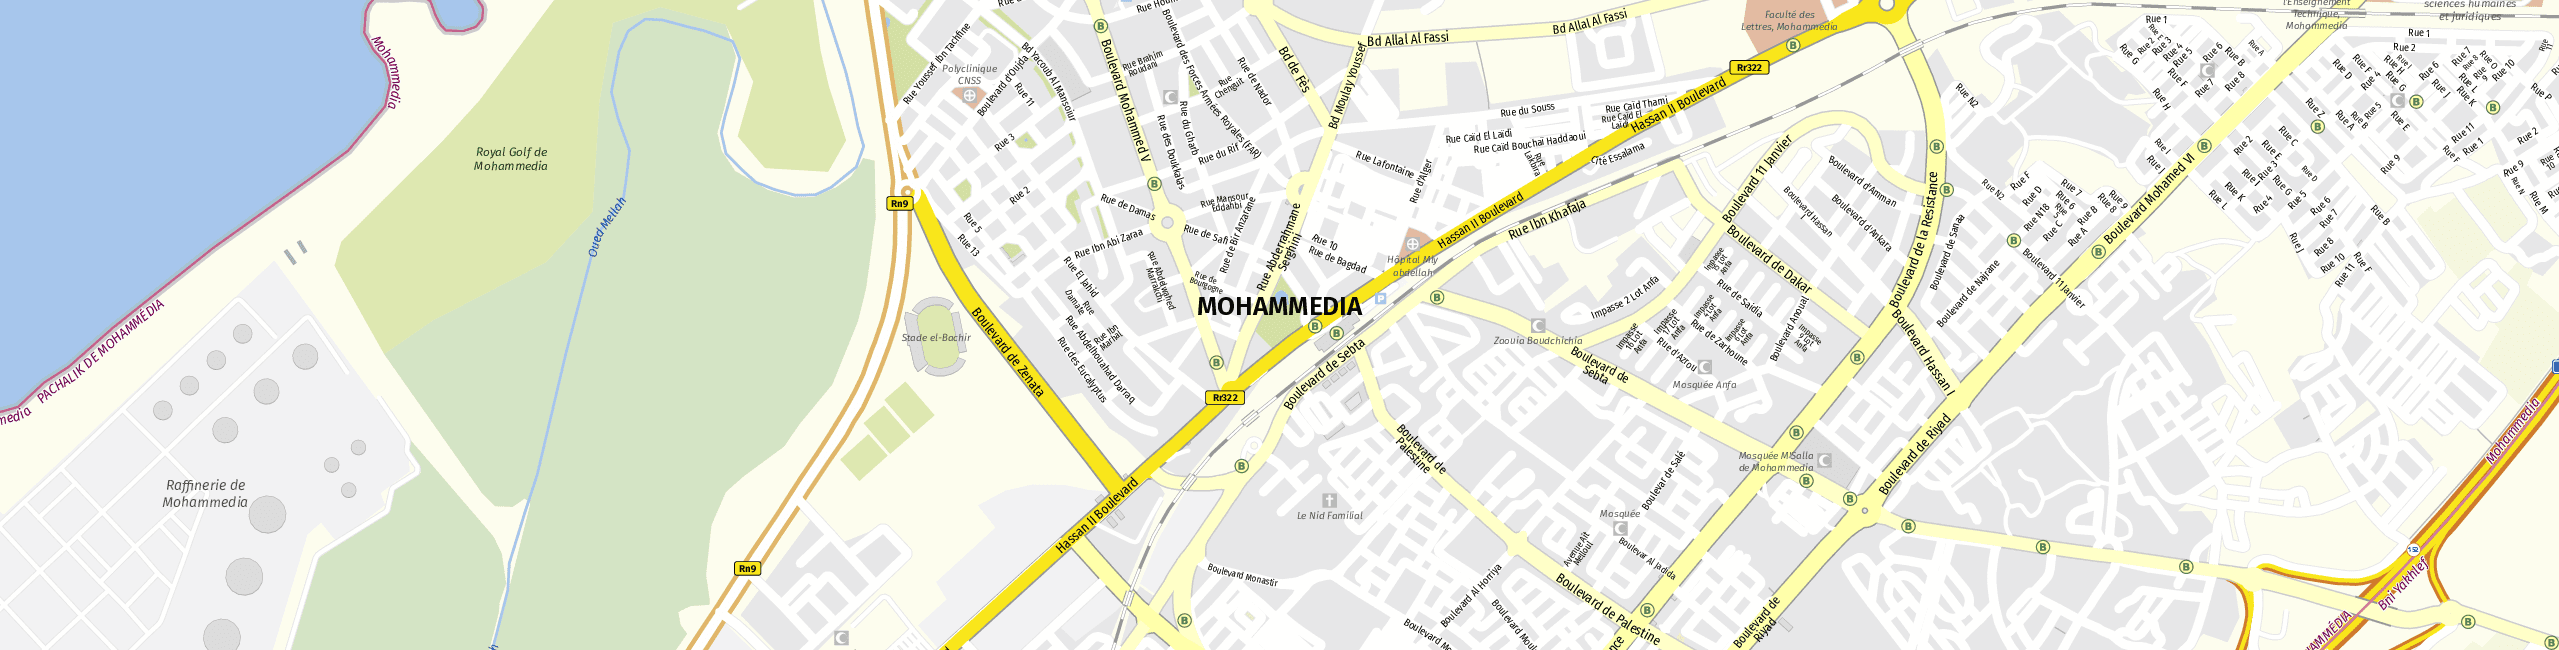 Stadtplan Mohammédia zum Downloaden.